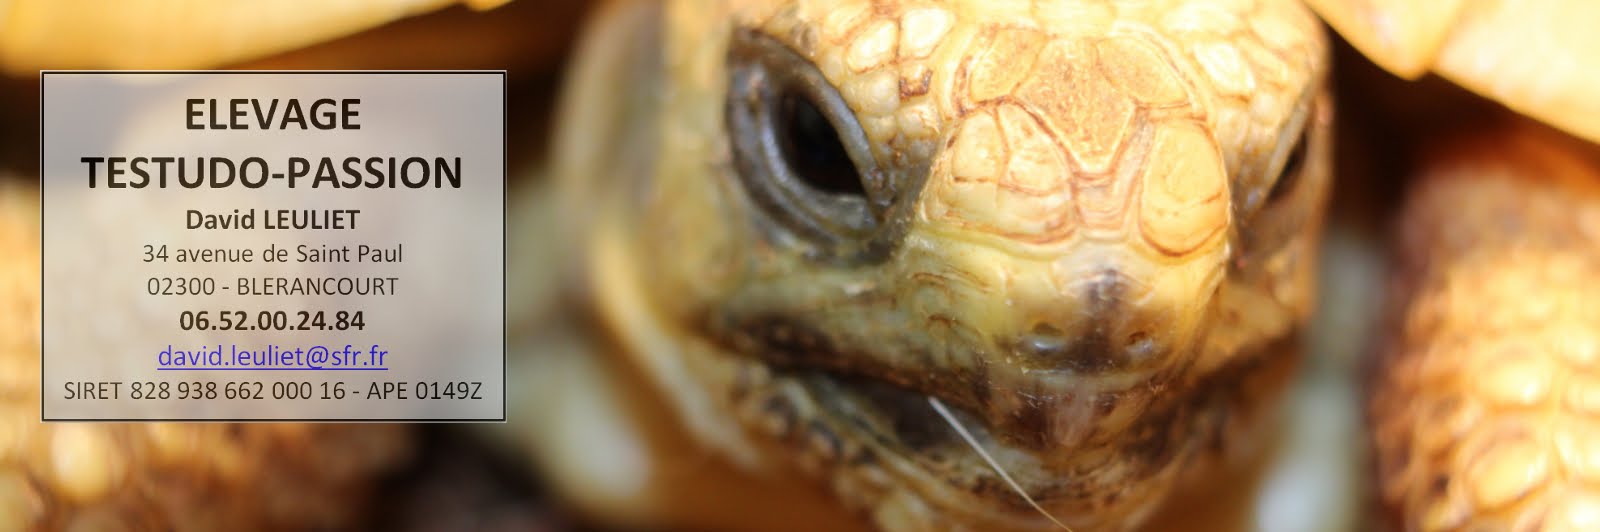 Elevage amateur de tortues terrestres en Picardie Aisne : Espèces Testudo ibera et Boettgeri